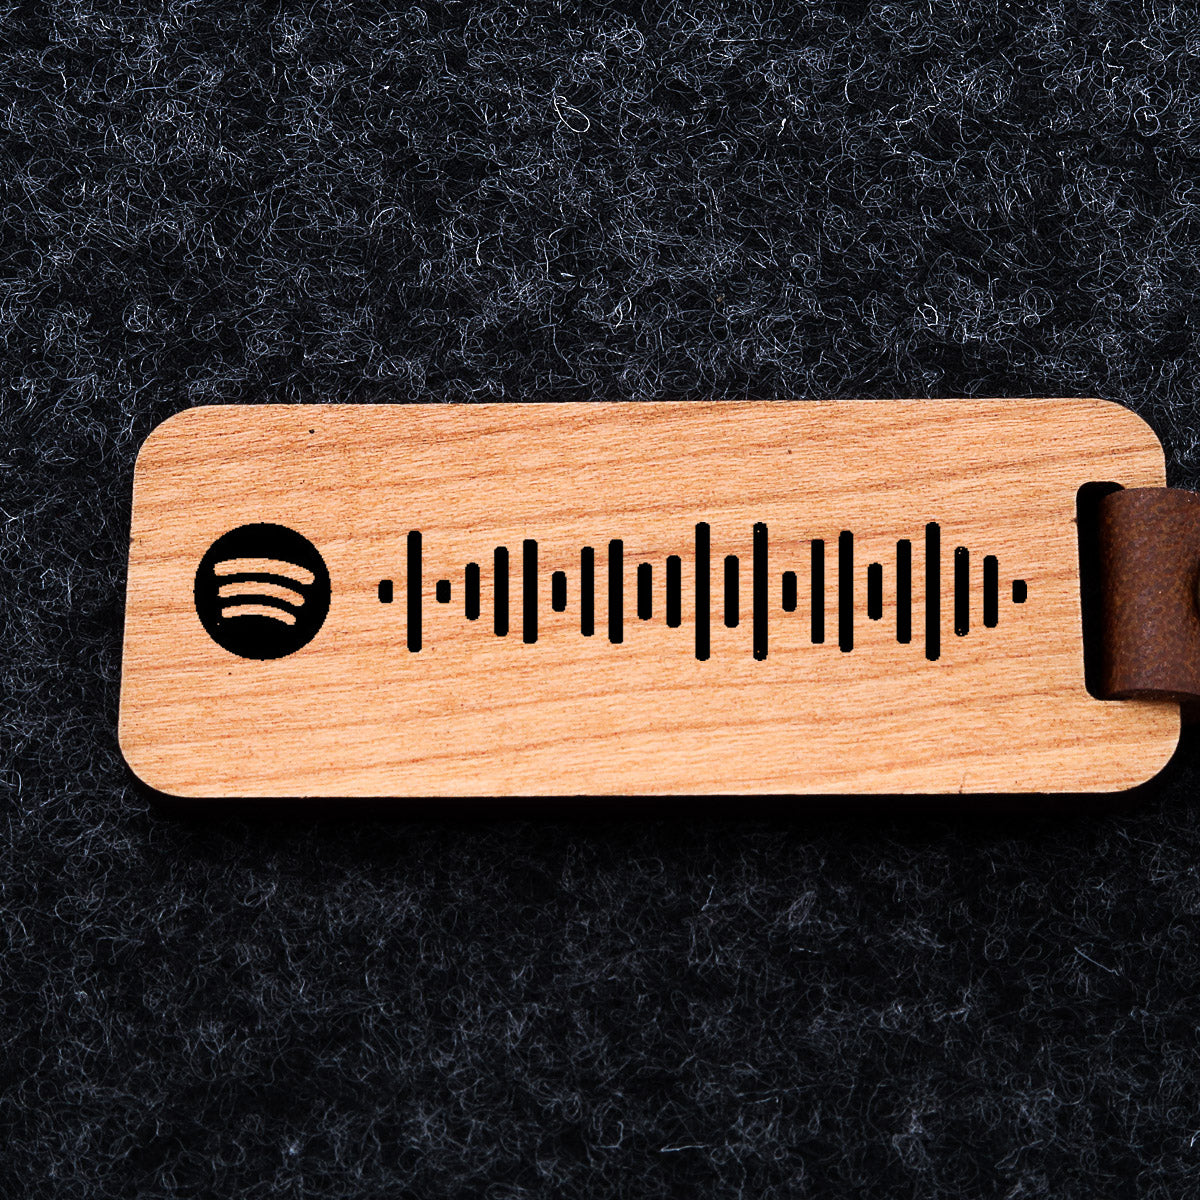 Spotify-nøglering i træ med Spotify-kode